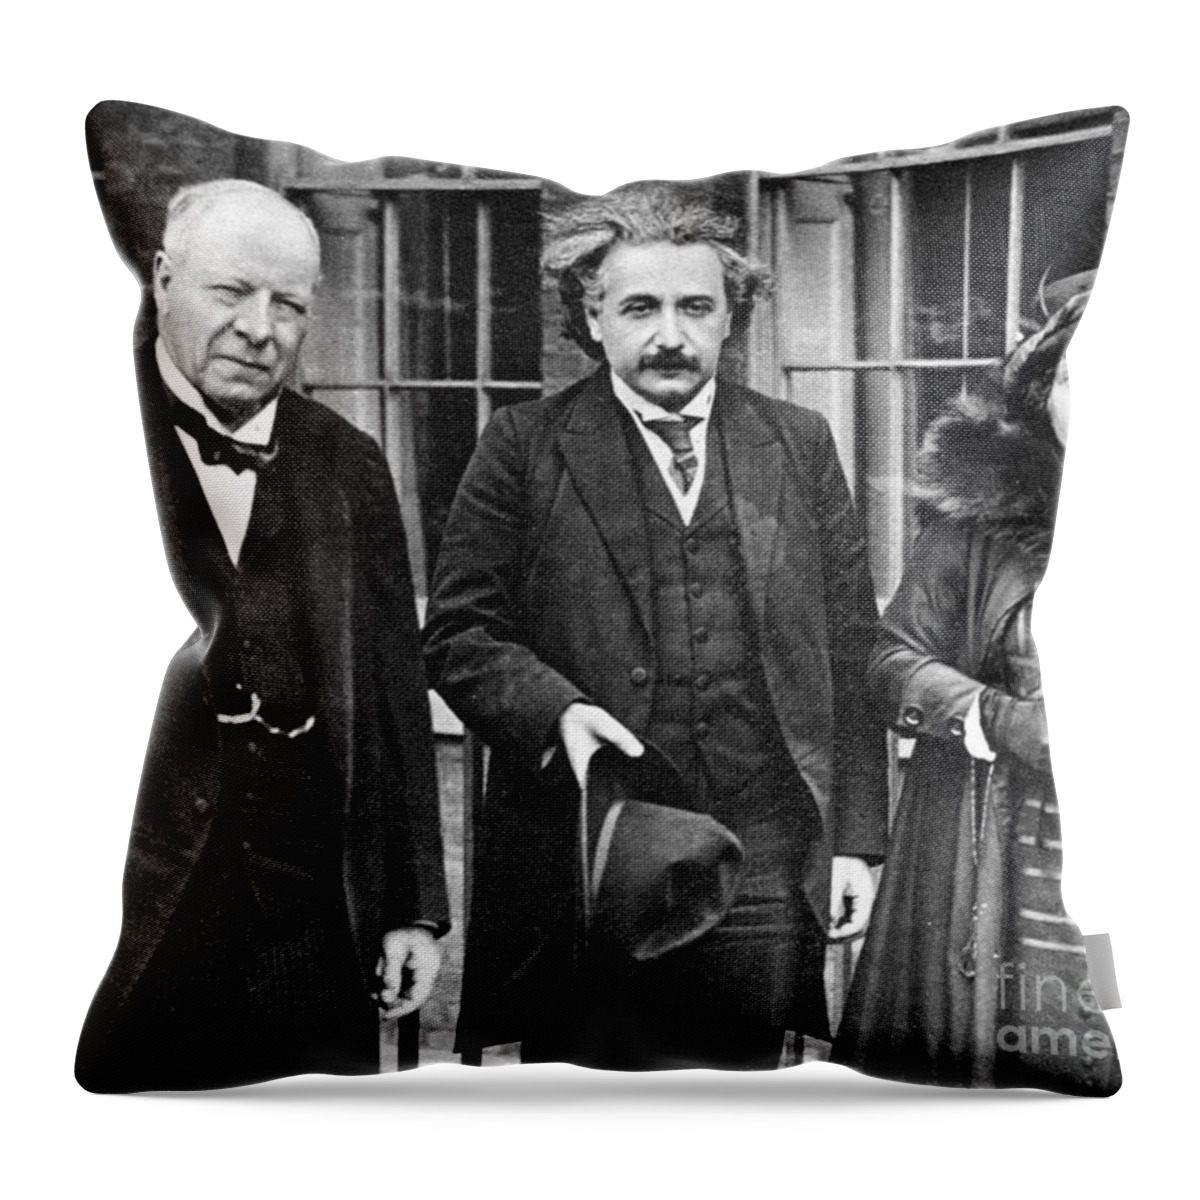 1921 Throw Pillow featuring the photograph Albert Einstein #2 by Granger